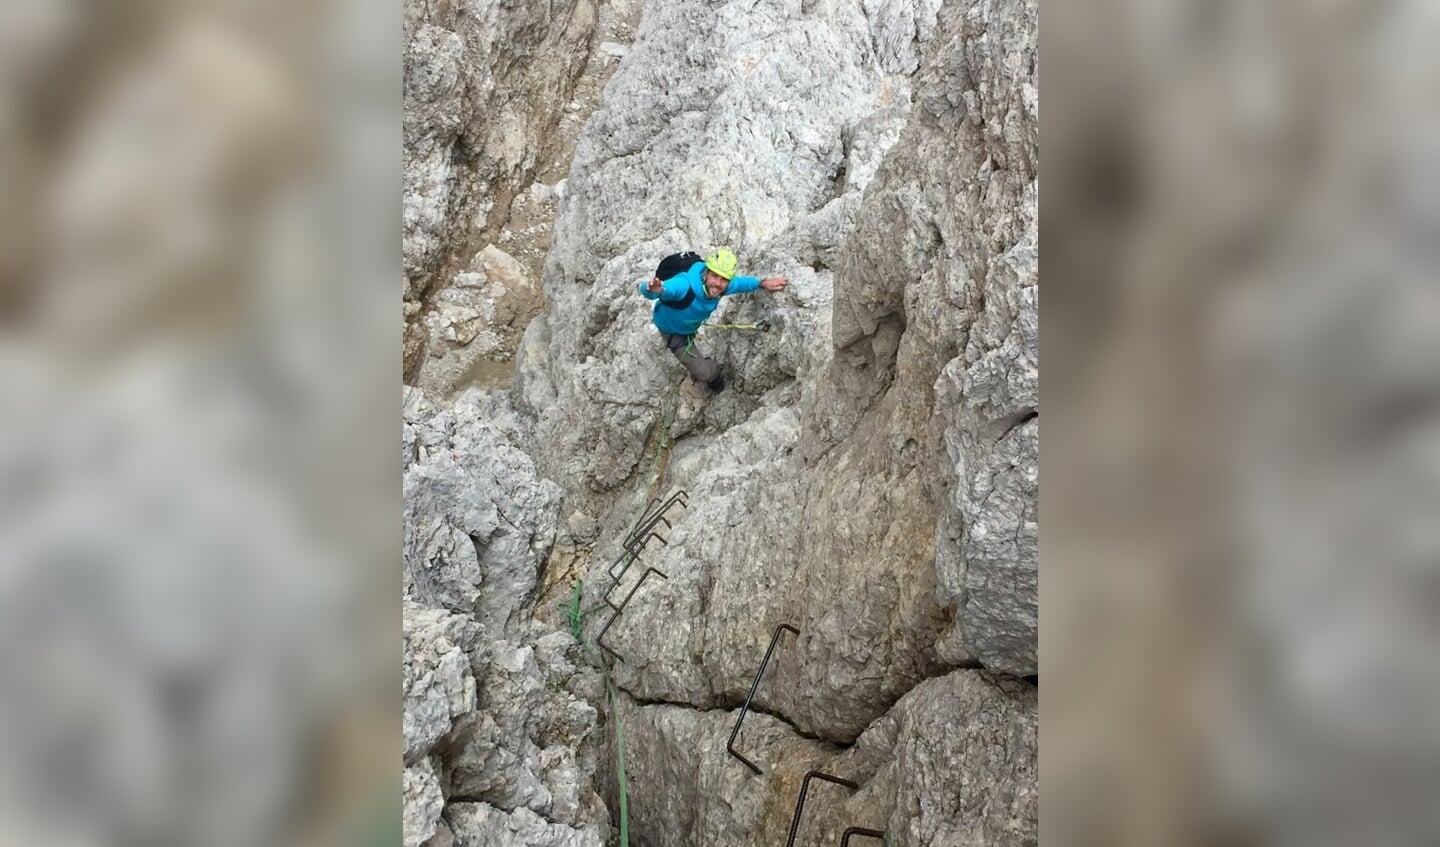 Bas Saris aan het klimmen in de Dolomieten.